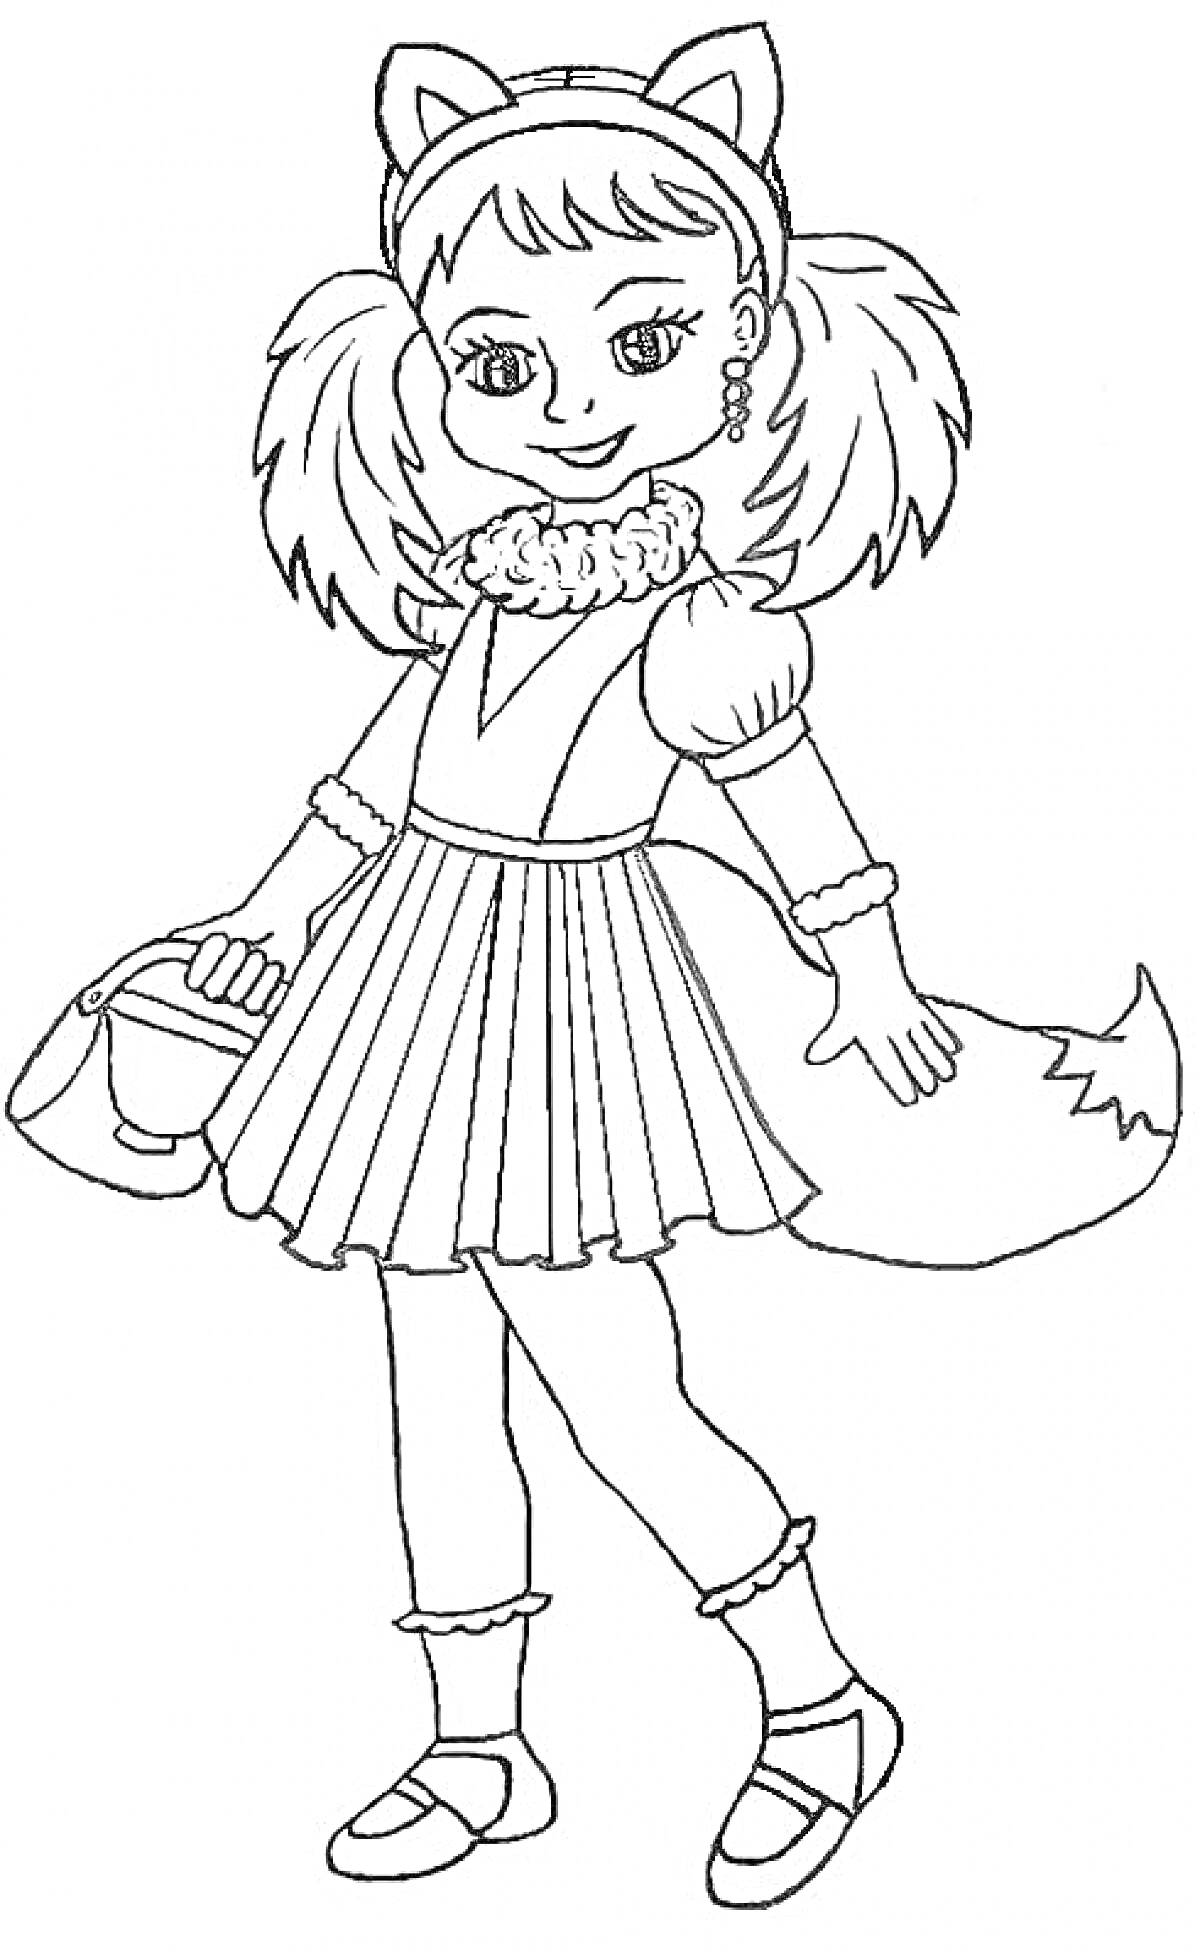 Девочка в костюме лисички с обручем с ушками, юбкой, манжетами, хвостом и сумочкой